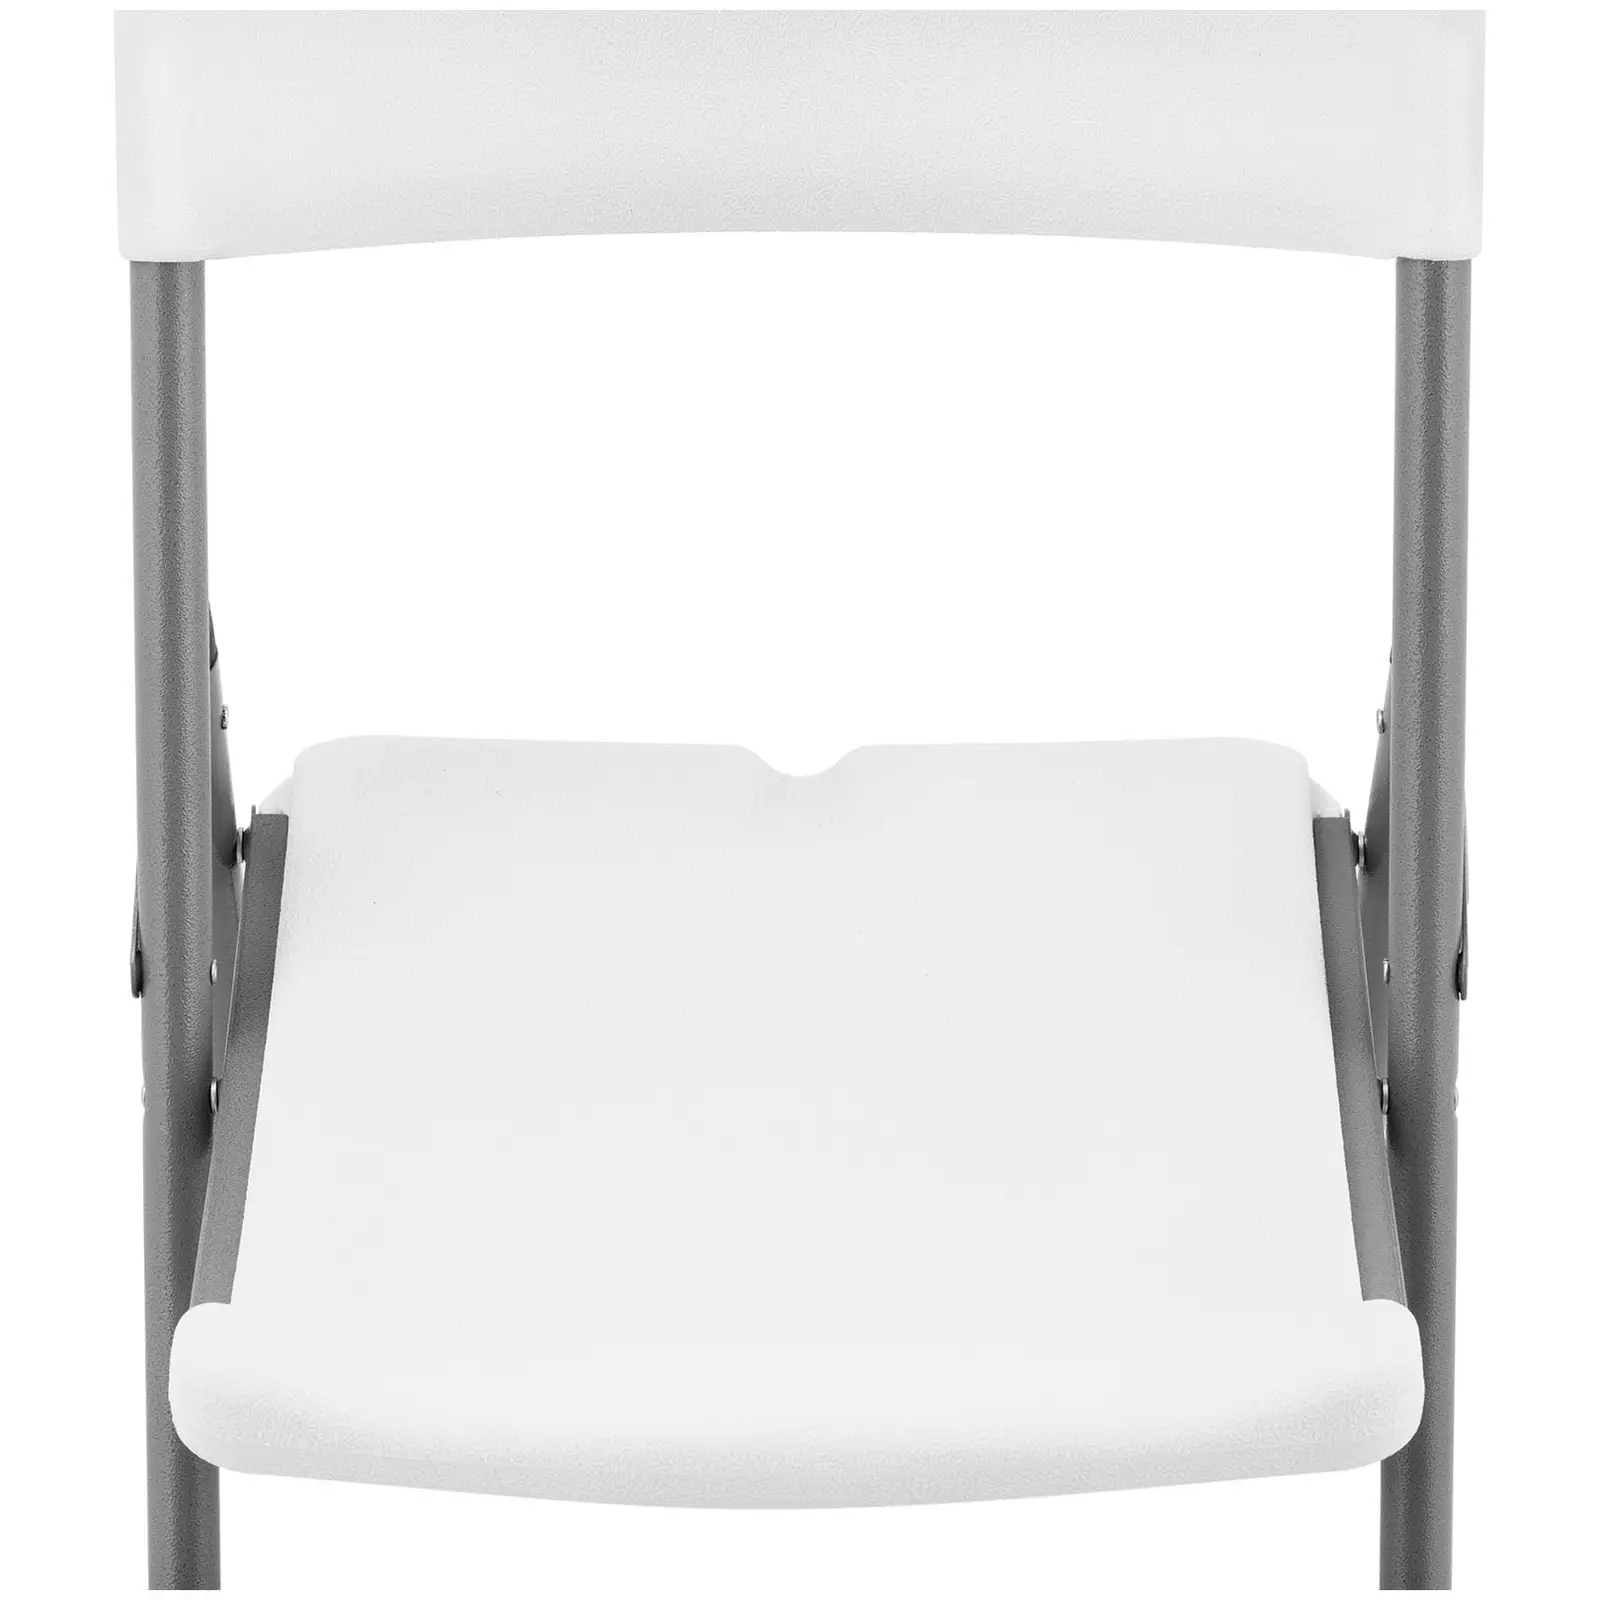 Πτυσσόμενες καρέκλες - σετ 4 - Royal Catering - 180 kg - επιφάνεια καθίσματος: 40 x 38 cm - λευκό